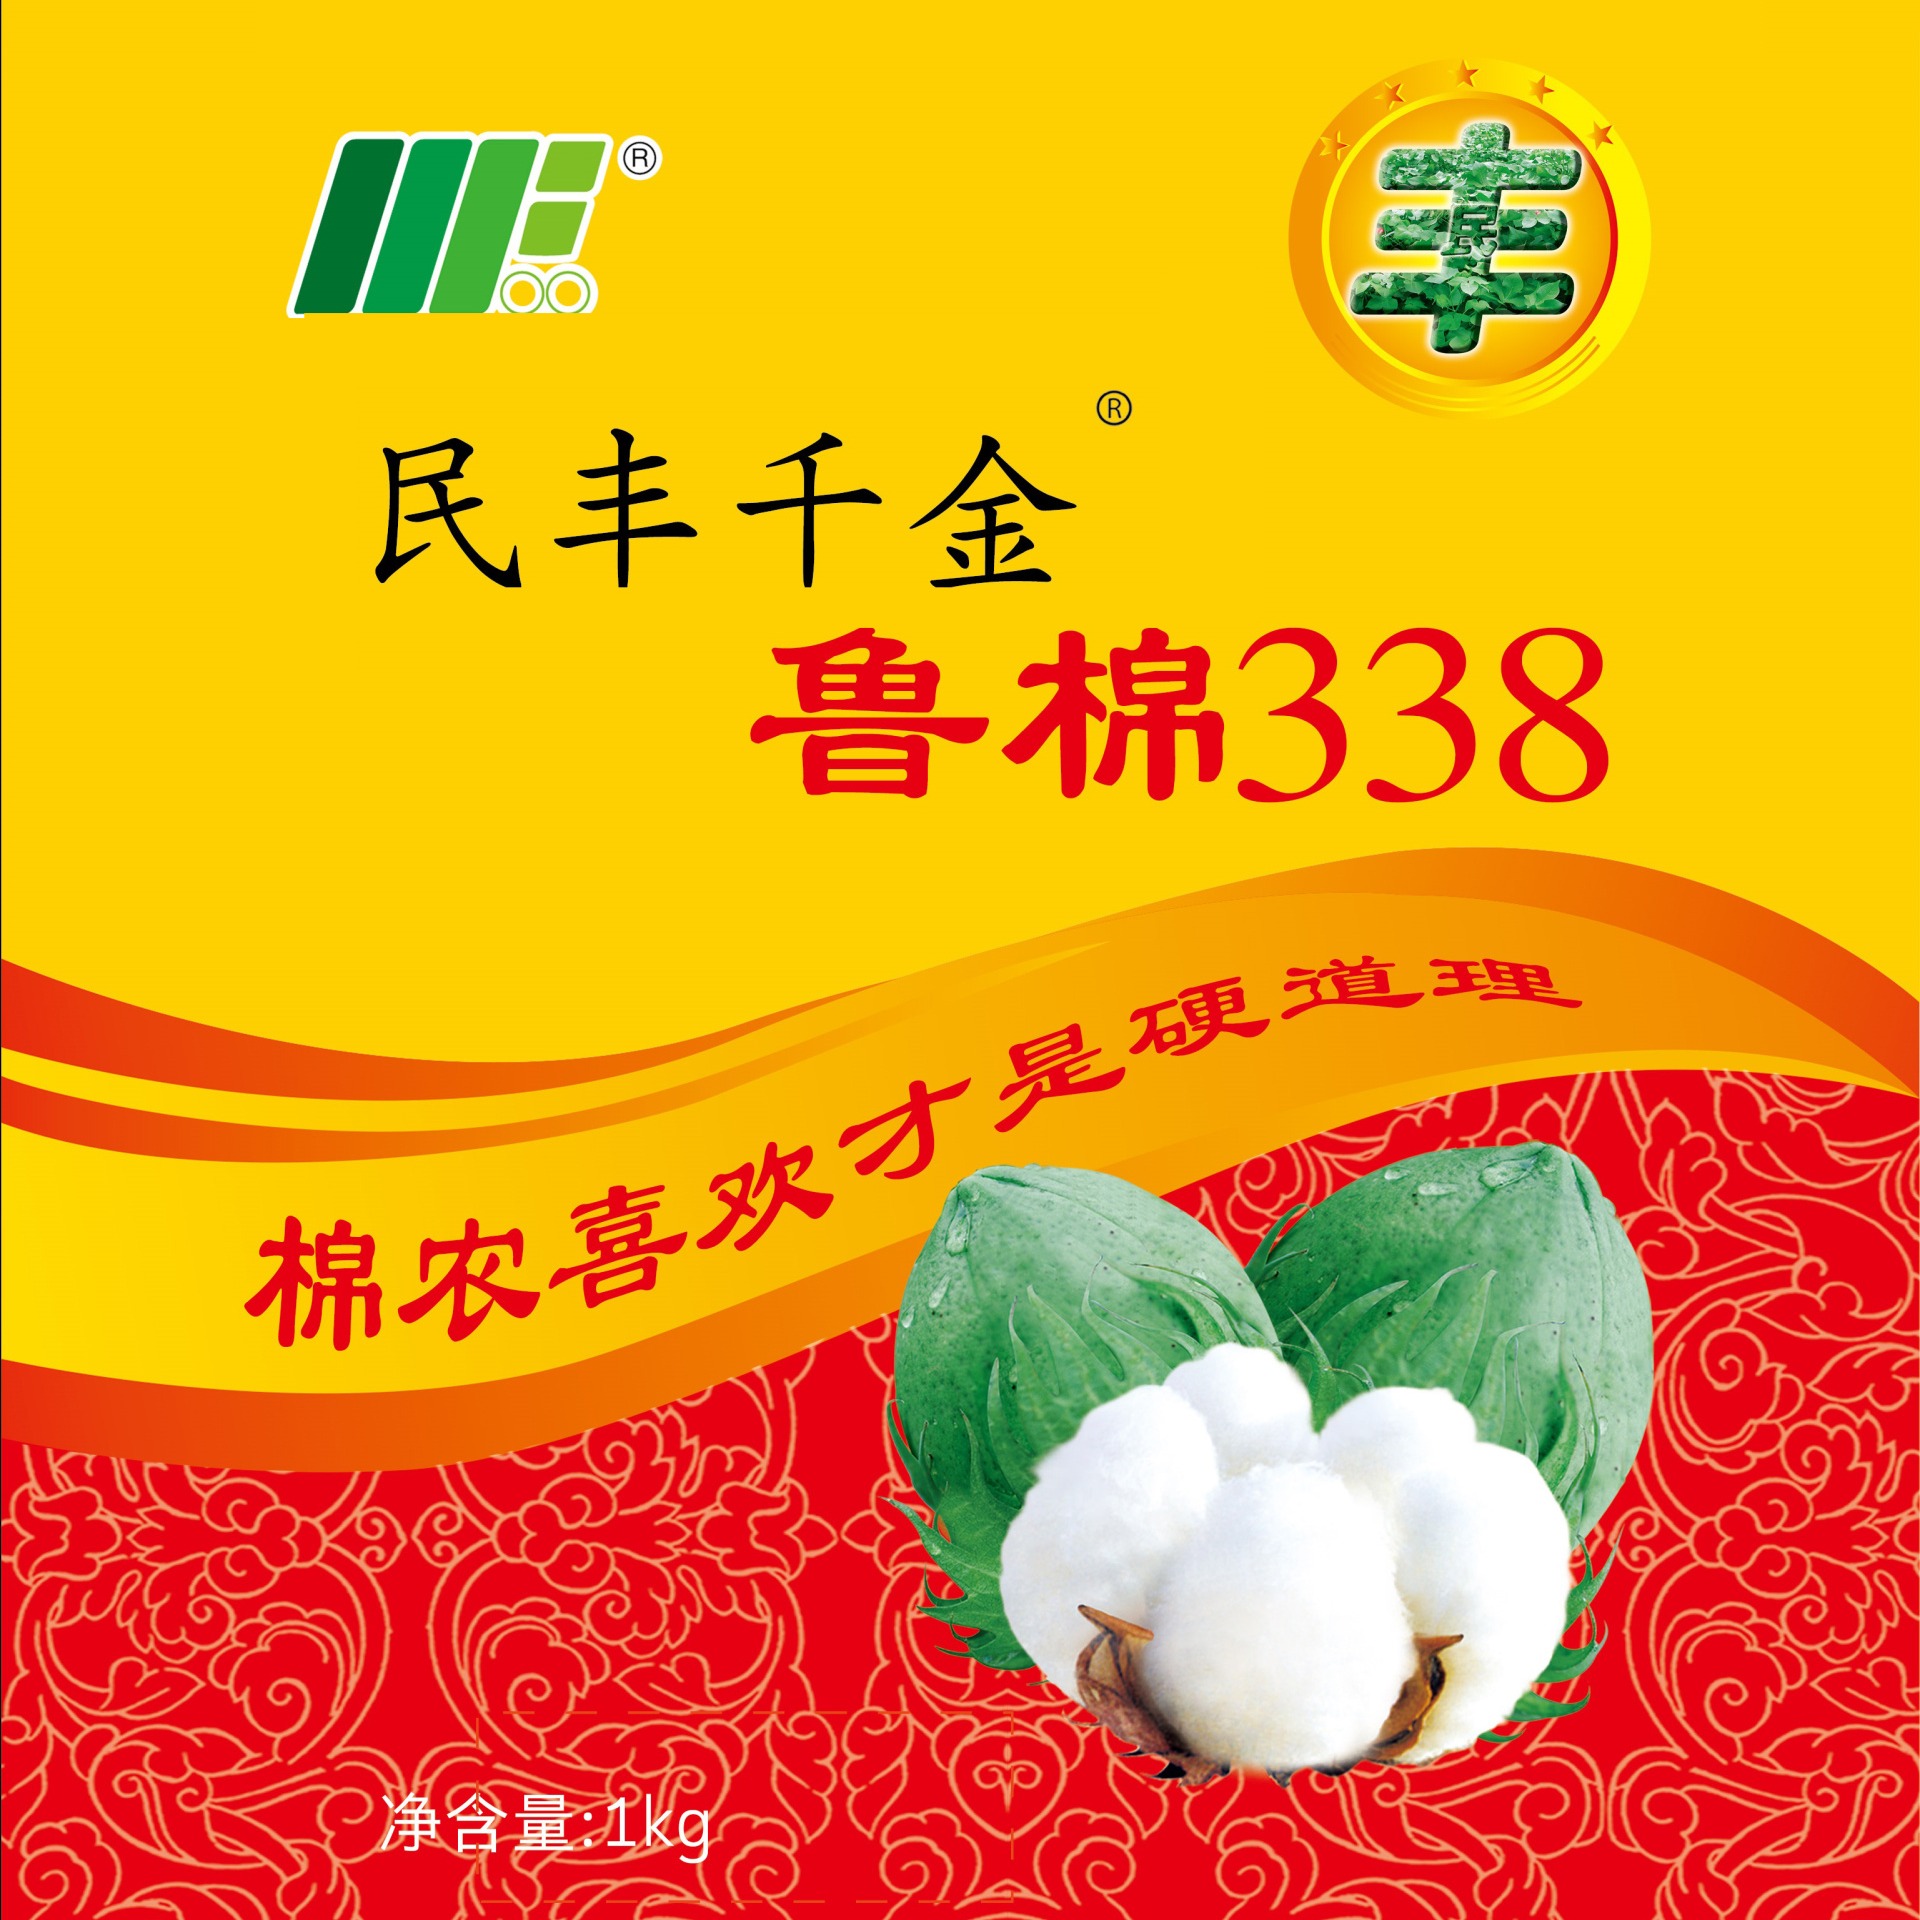 鲁棉338  338  棉花种子  转基因抗虫棉  棉花  种子图片